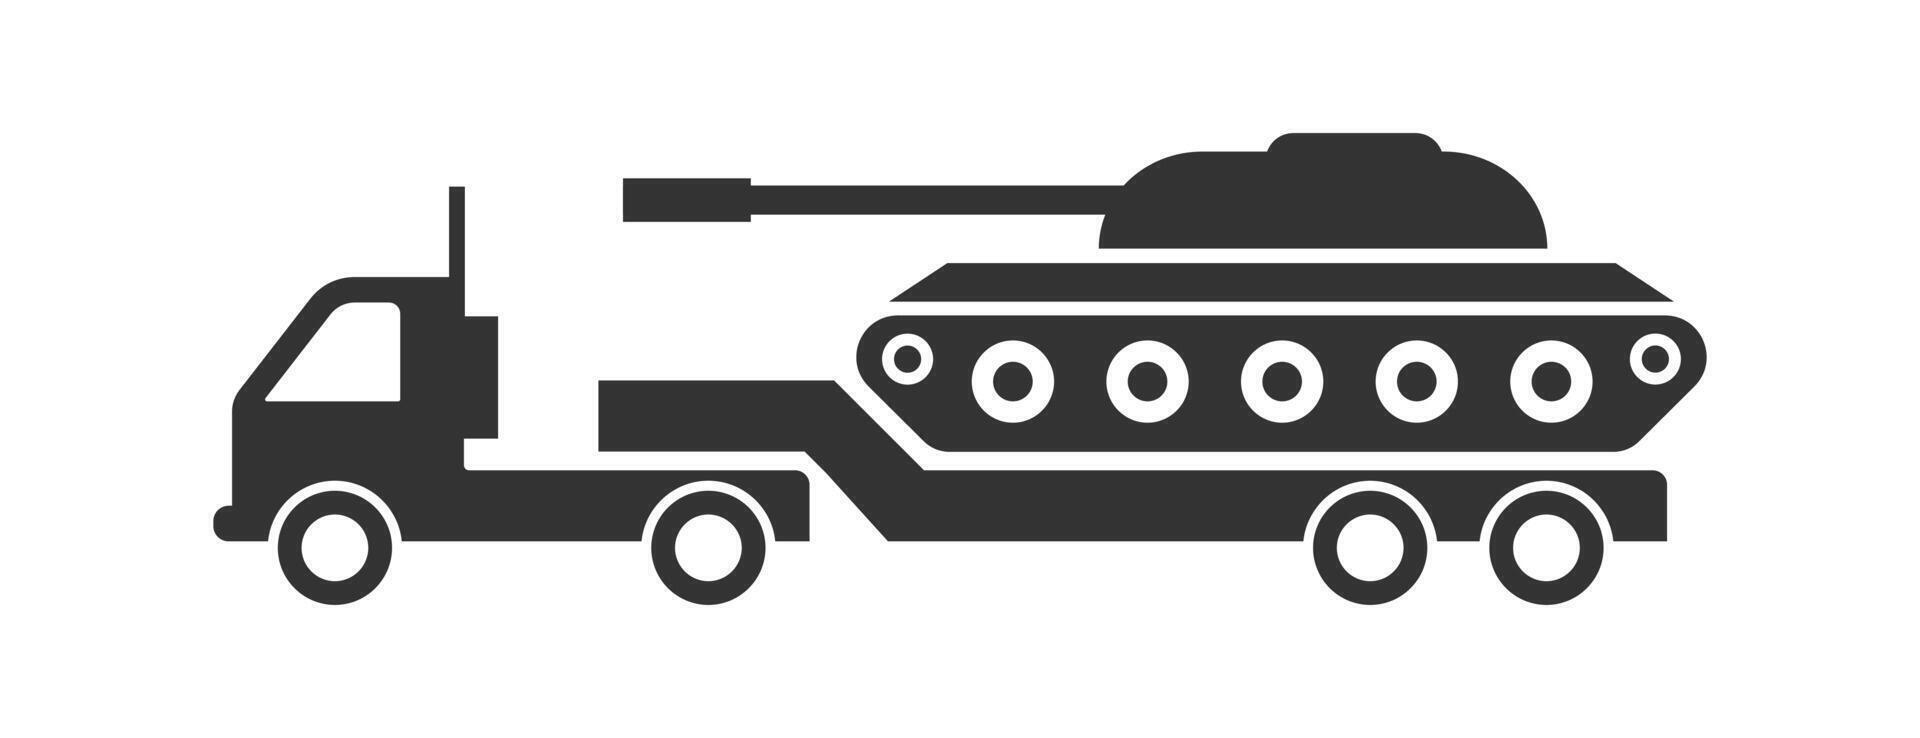 tank på en lastbil ikon. militär tank transport ikon. vektor illustration.